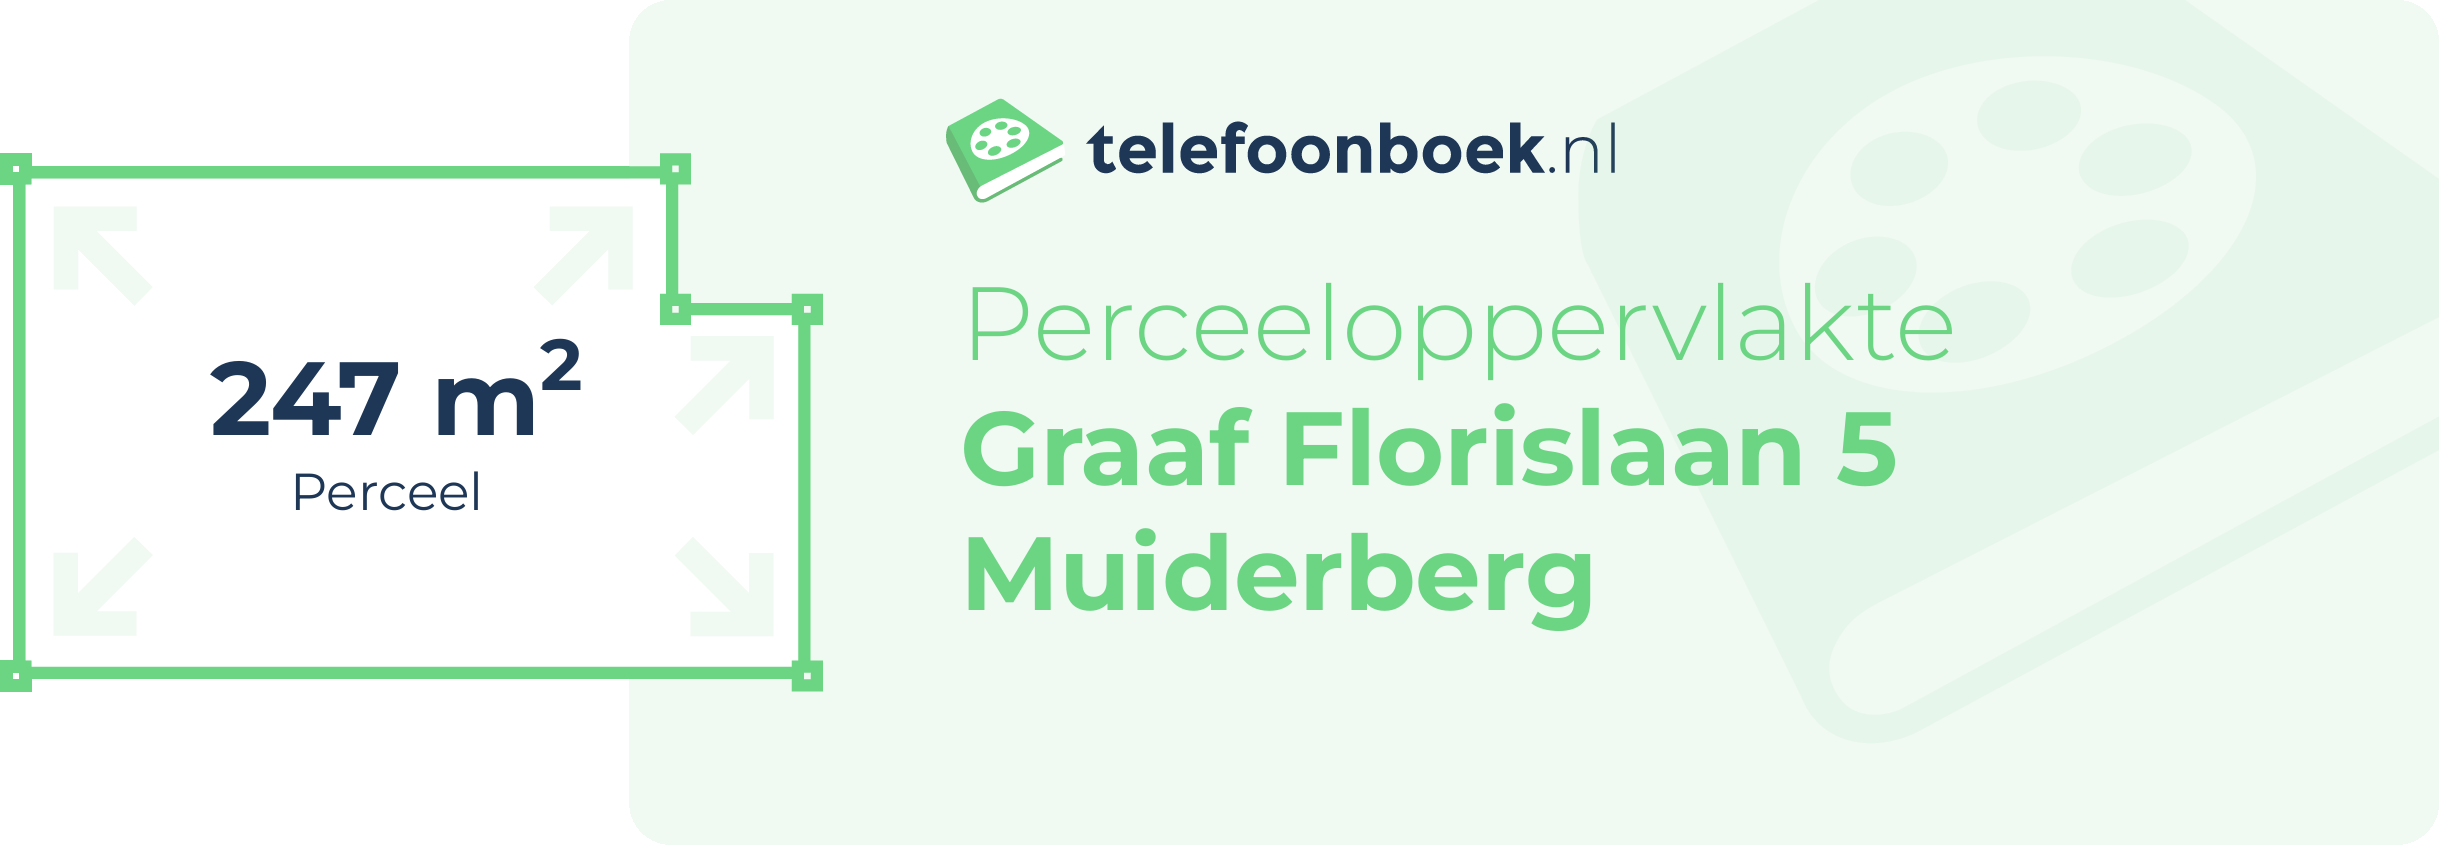 Perceeloppervlakte Graaf Florislaan 5 Muiderberg